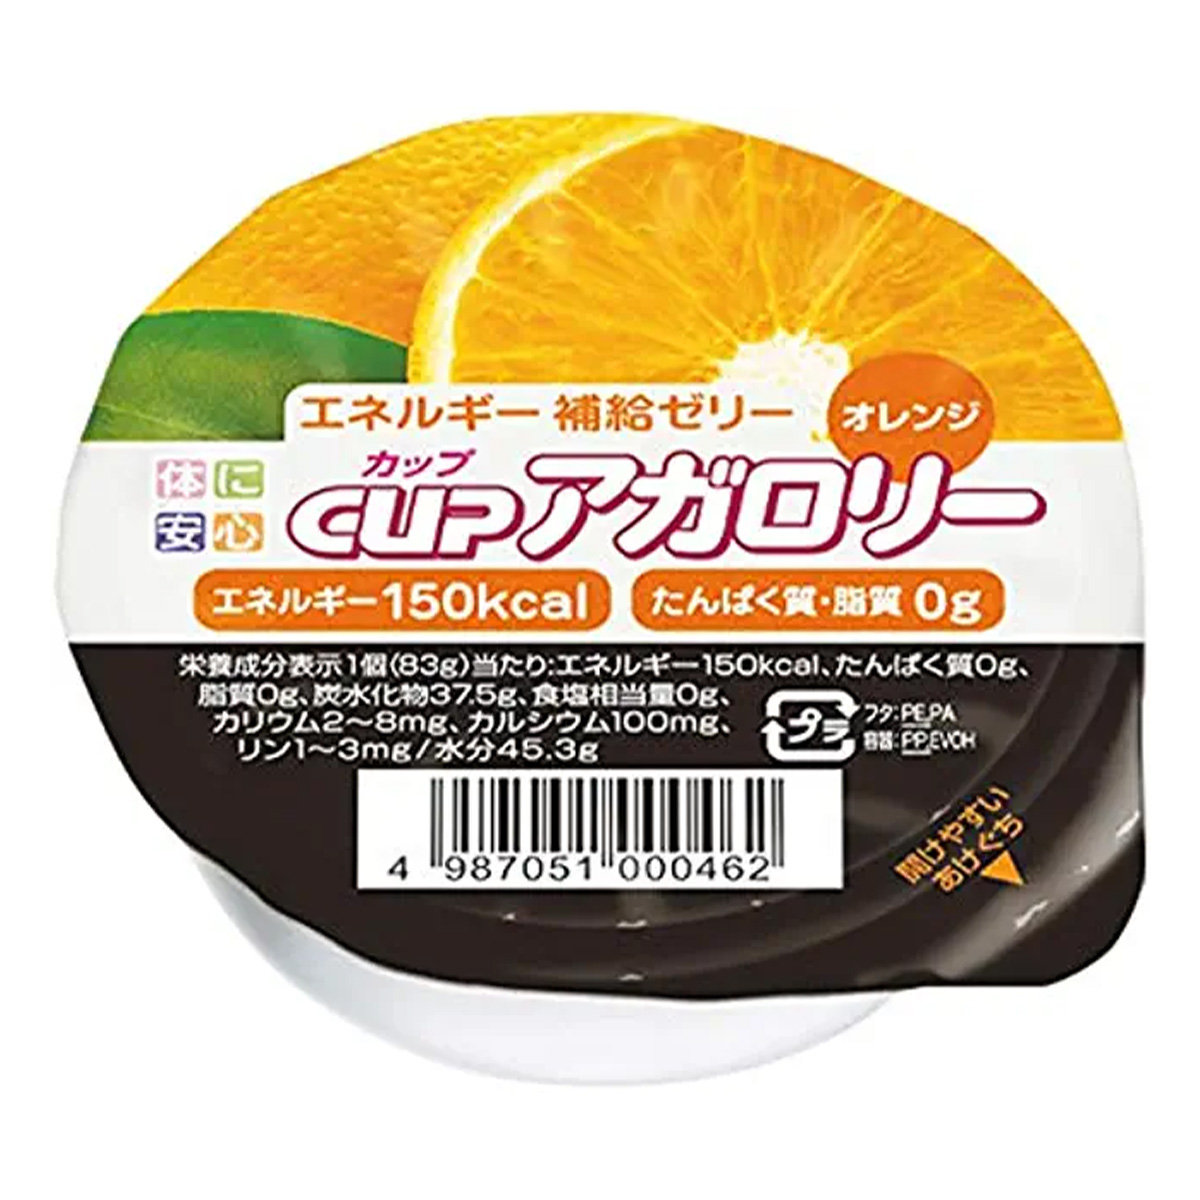 キッセイ キッセイ カップアガロリー オレンジ 83g×1個 介護食の商品画像